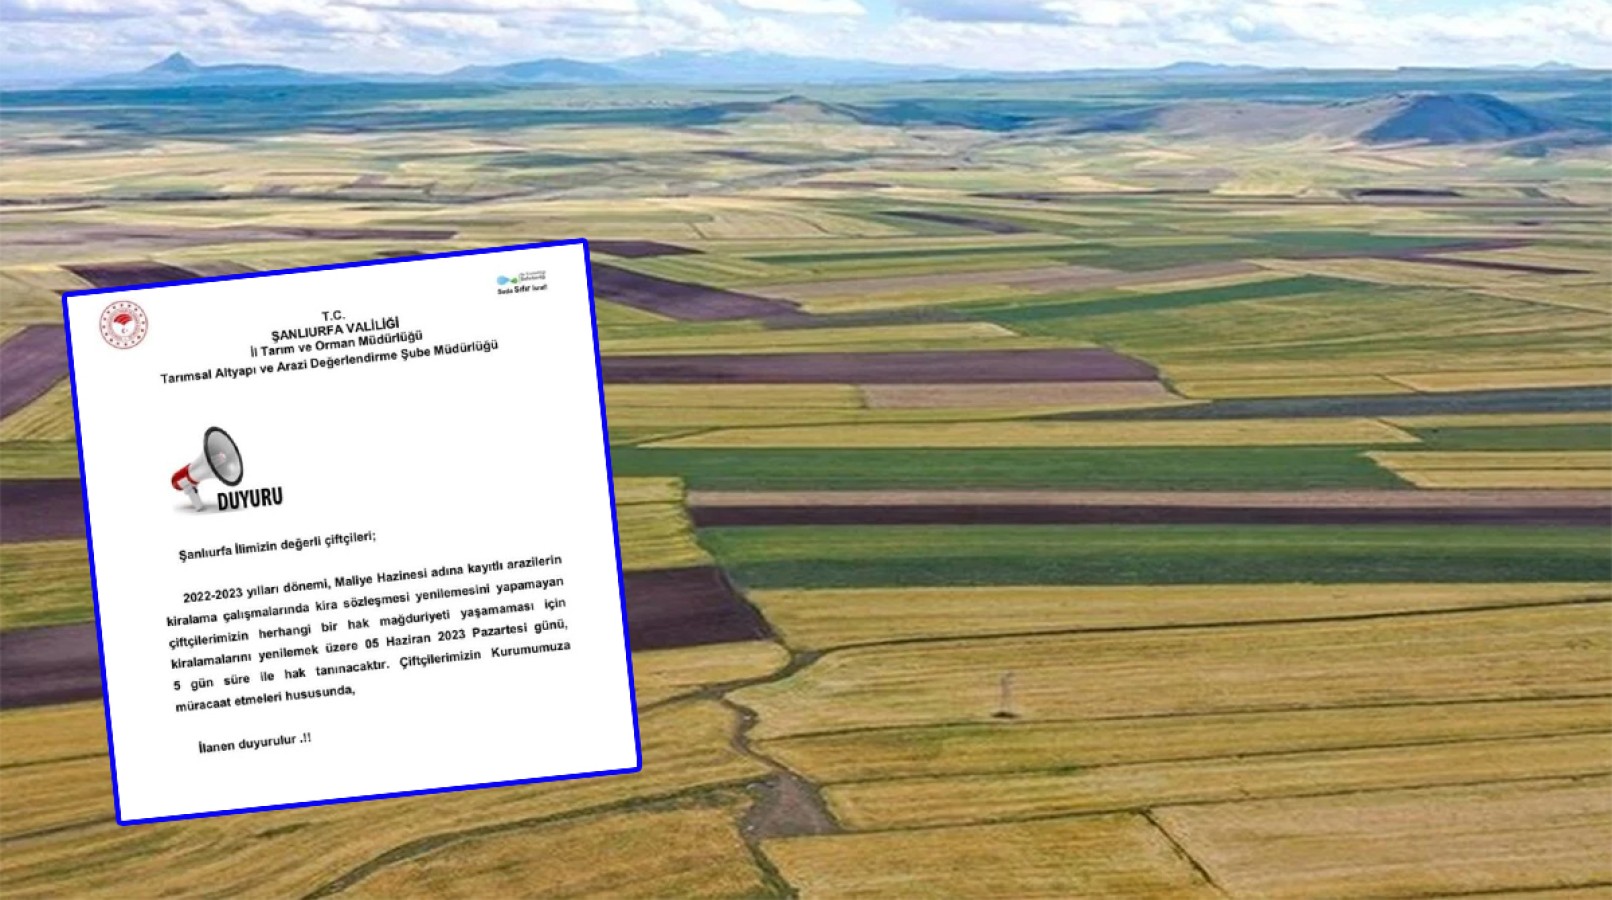 Urfa’da hazine arazilerinin kiralanmasıyla ilgili çiftçilere uyarı;